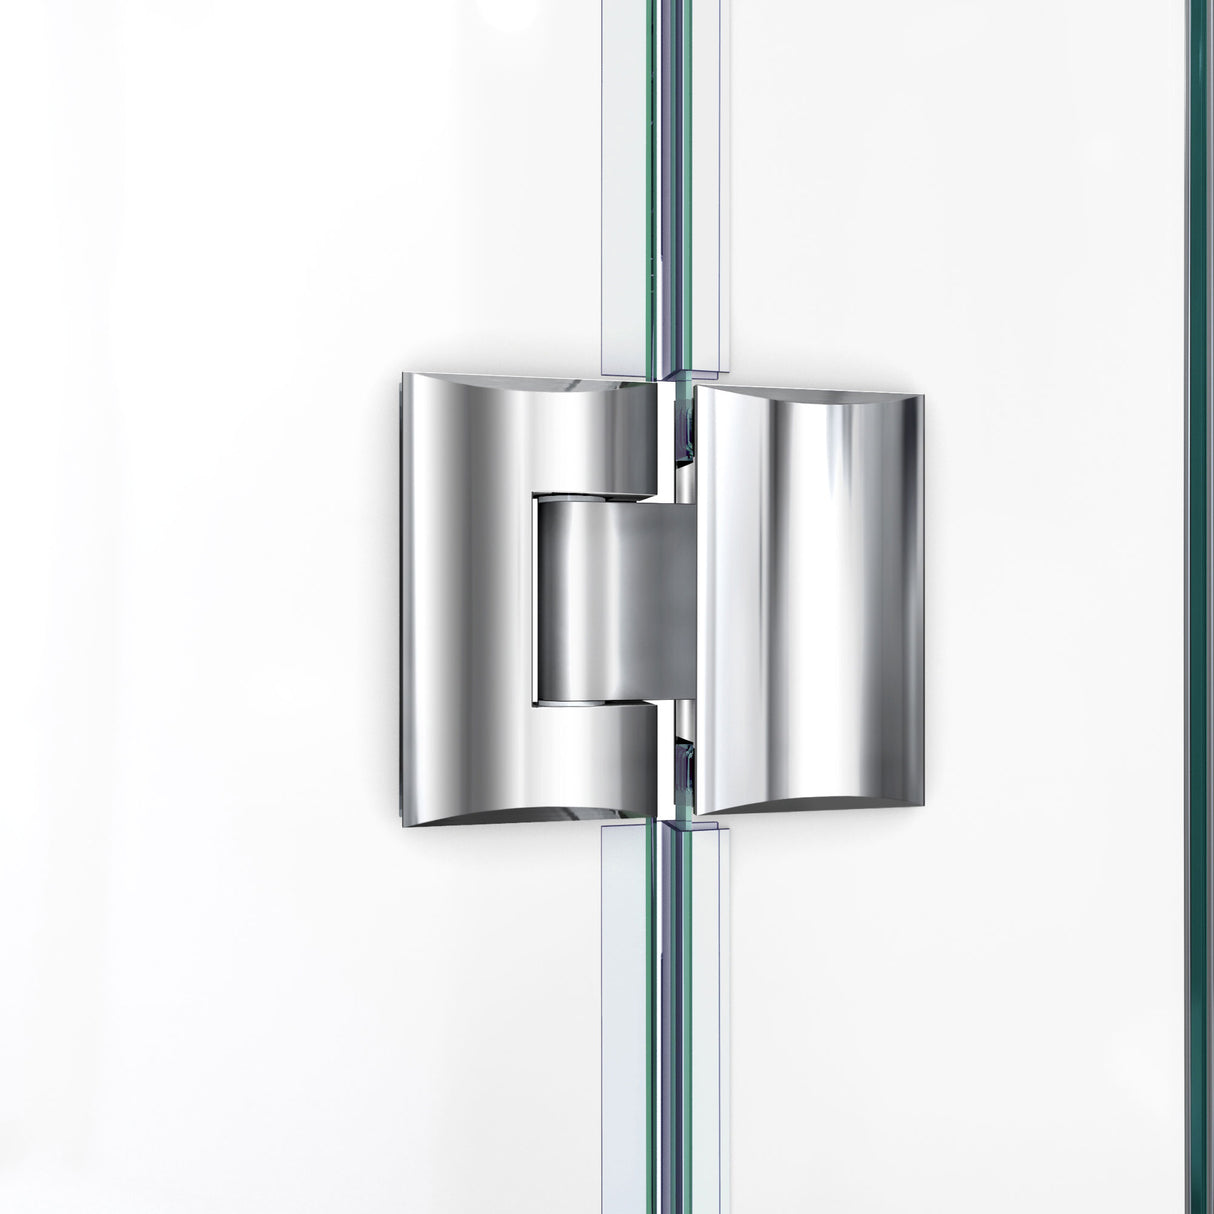 DreamLine Unidoor-X 36 in. W x 72 in. H Frameless Hinged Shower Door in Brushed Nickel